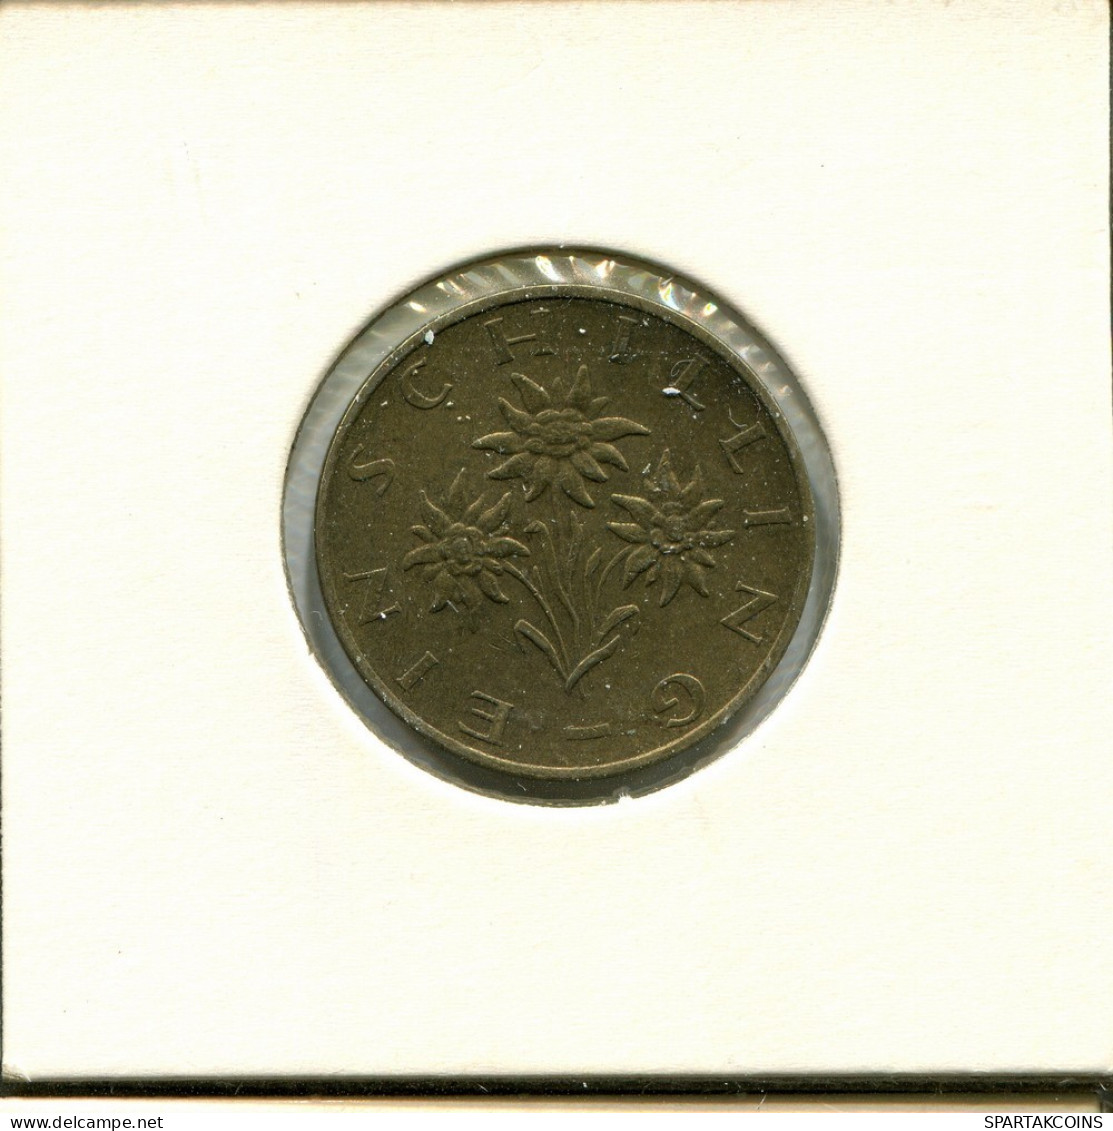 1 SCHILLING 1977 AUSTRIA Moneda #AV085.E.A - Austria